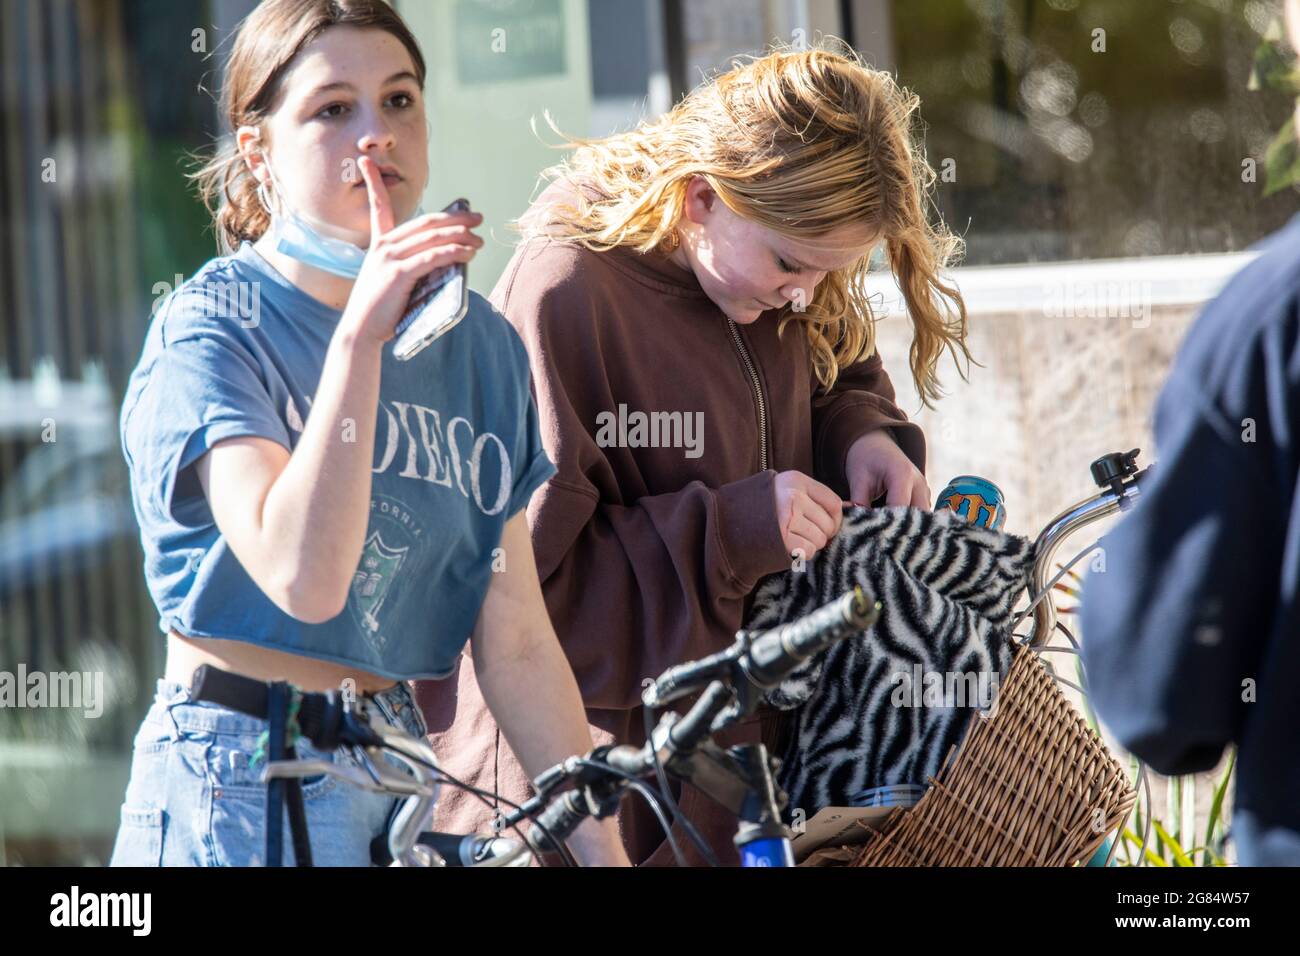 Zwei australische Mädchen im Teenageralter mit Gesichtsmark am Kinn während einer Coronavirus-Pandemie mit Covid 19, Sydney, Australien Stockfoto